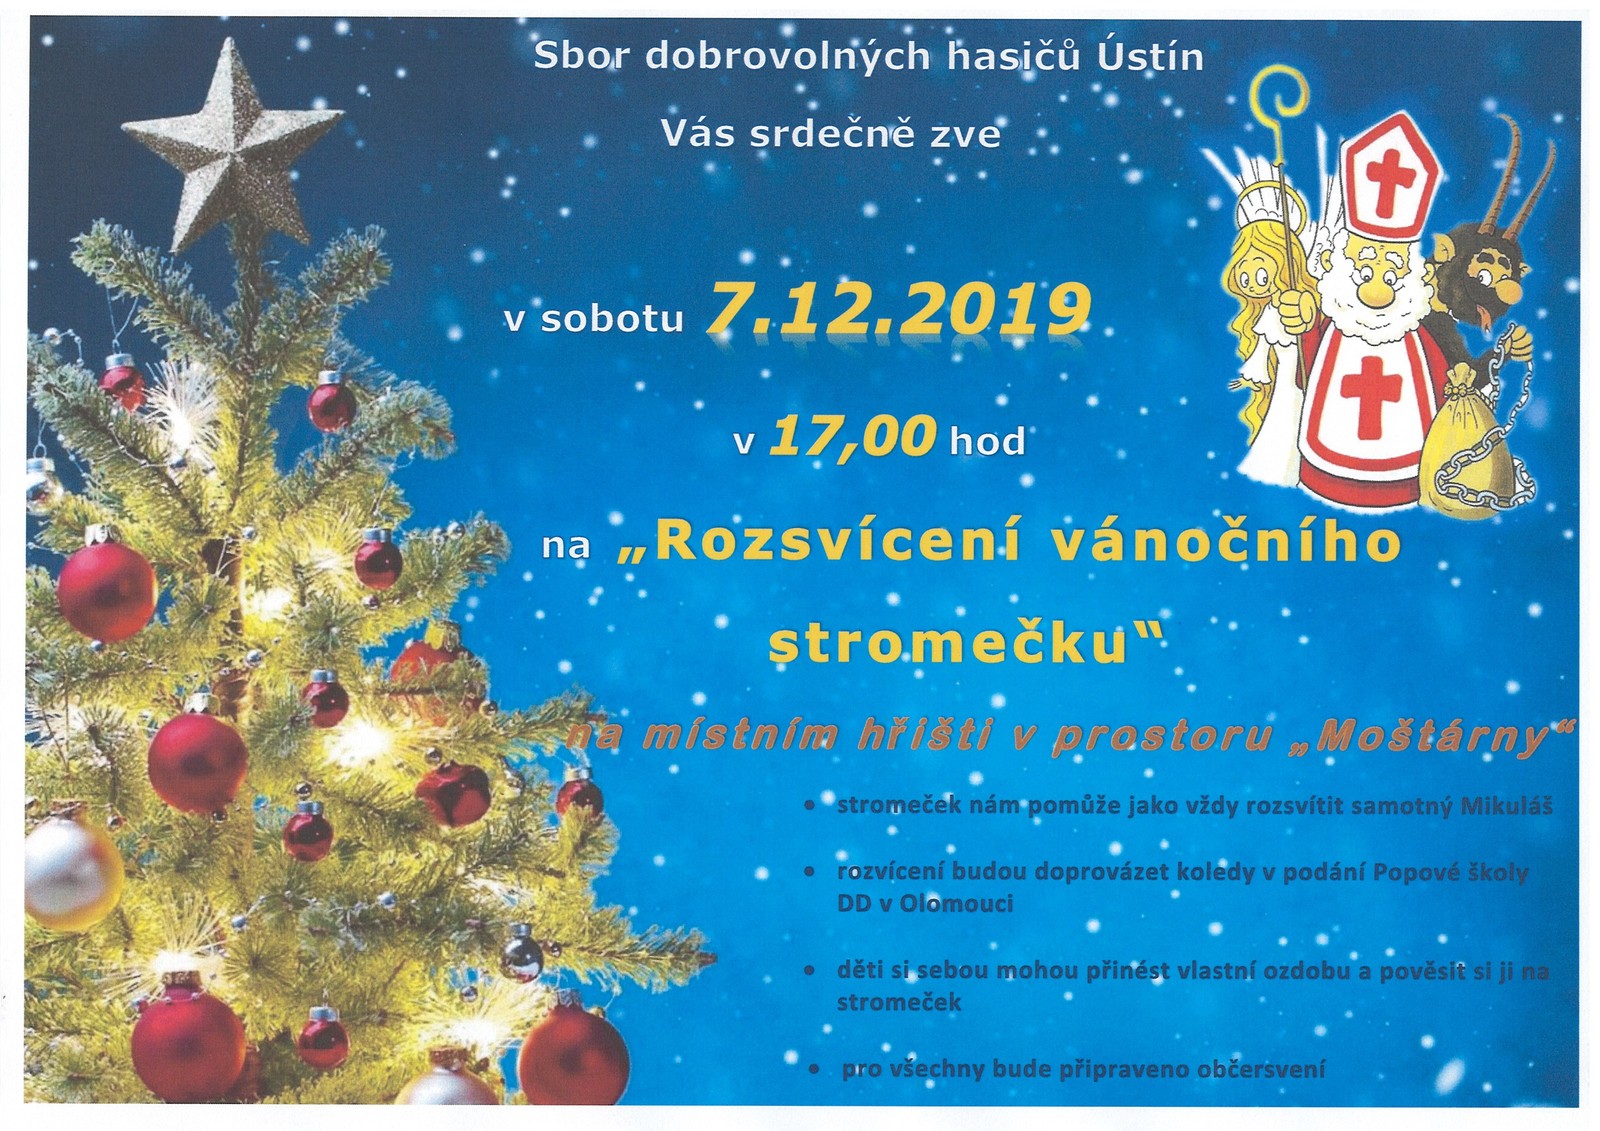 Rozsvícení vánočního stromečku v Ústíně